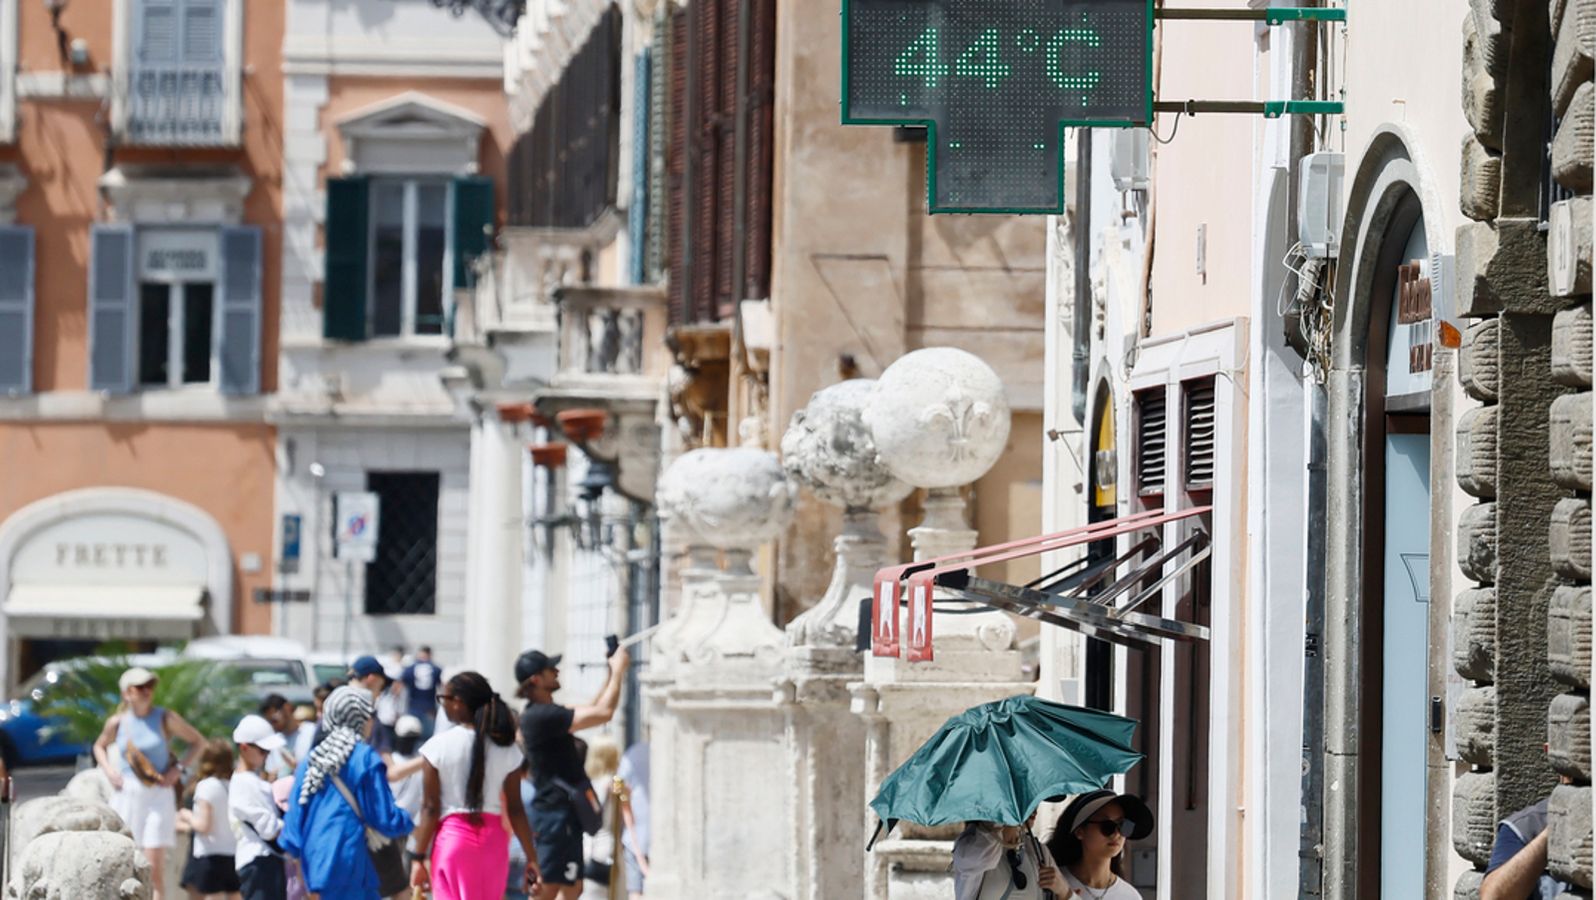 Picco ondata di caldo: allarme rosso per le città in Italia